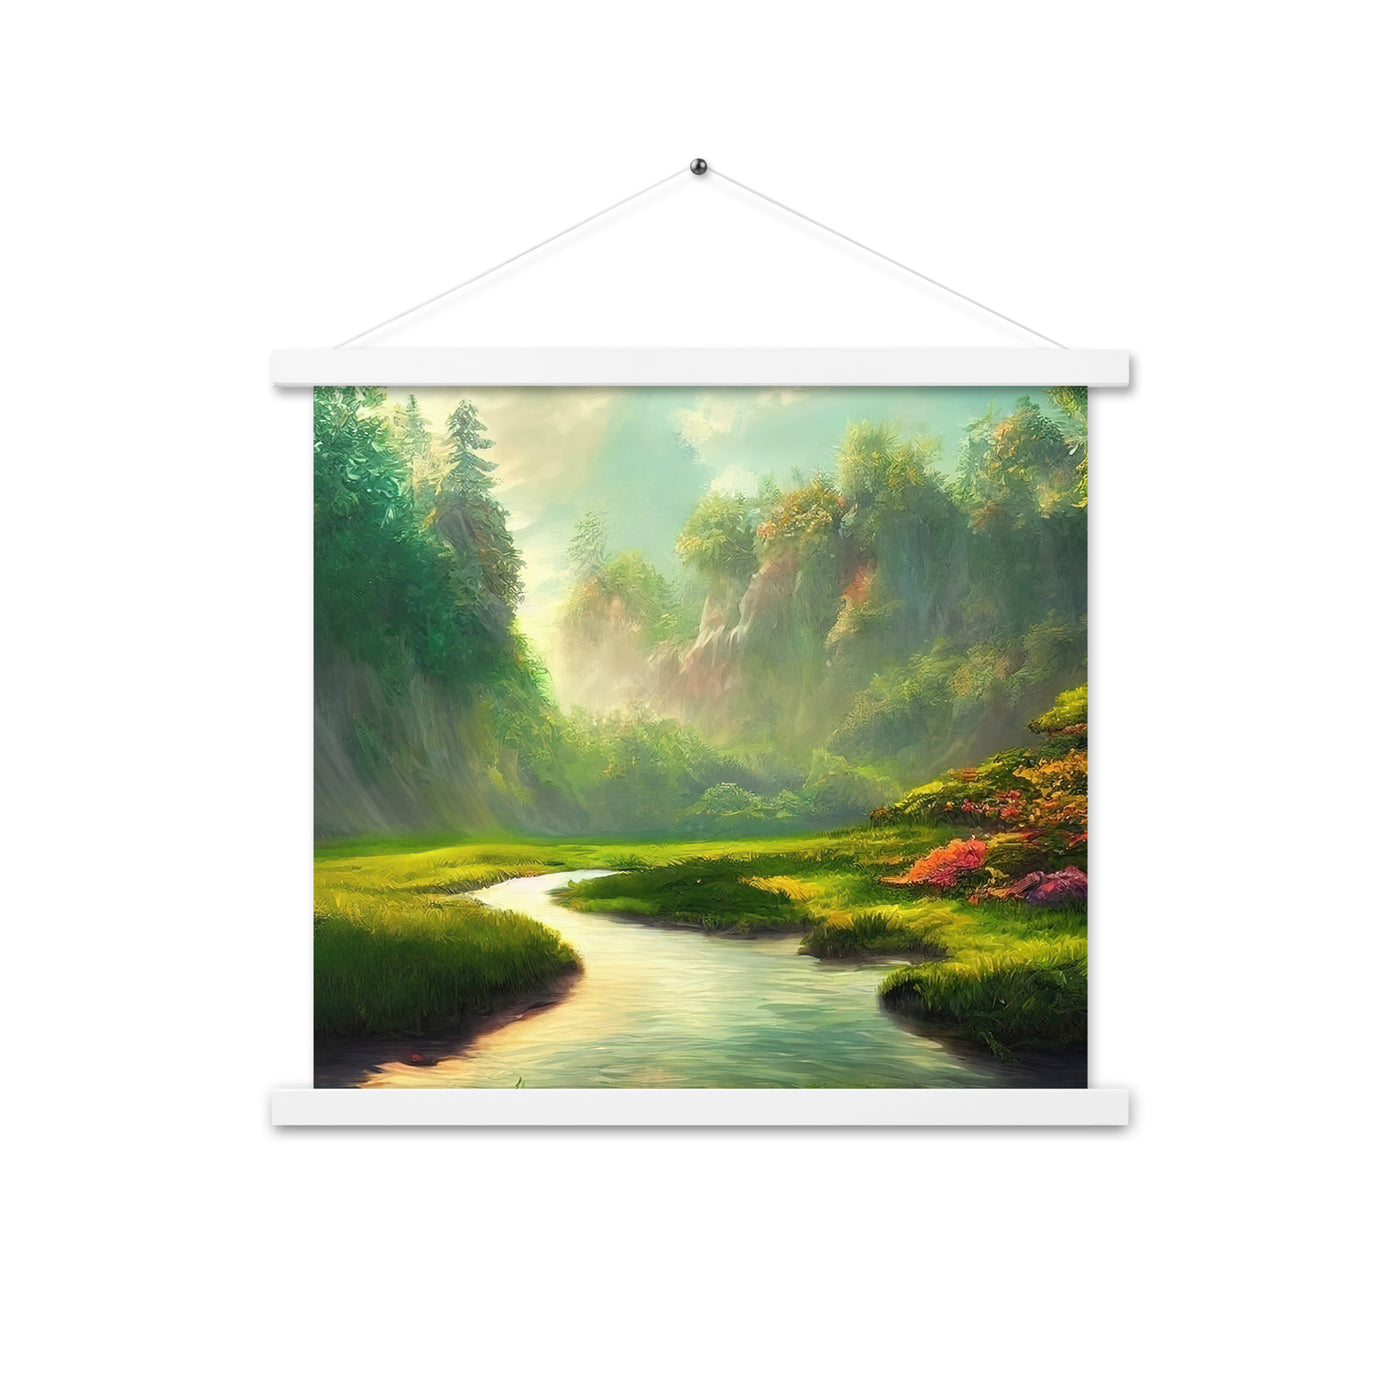 Bach im tropischen Wald - Landschaftsmalerei - Premium Poster mit Aufhängung camping xxx 45.7 x 45.7 cm